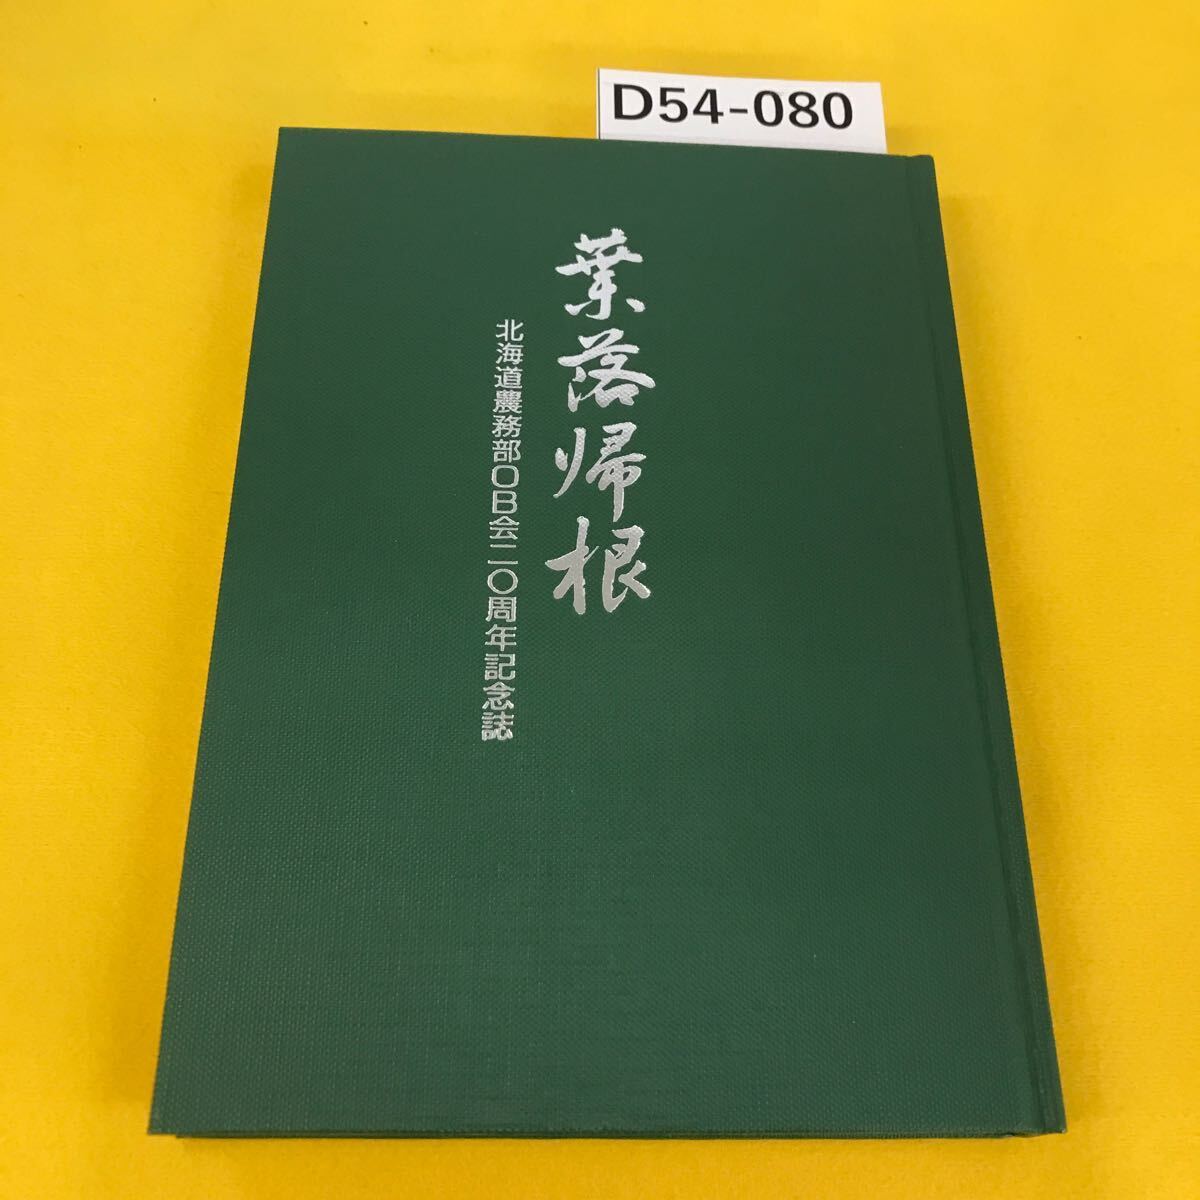 D54-080 лист .. корень Hokkaido сельское хозяйство . часть OB. 2 0 anniversary commemoration журнал коробка . загрязнения есть 